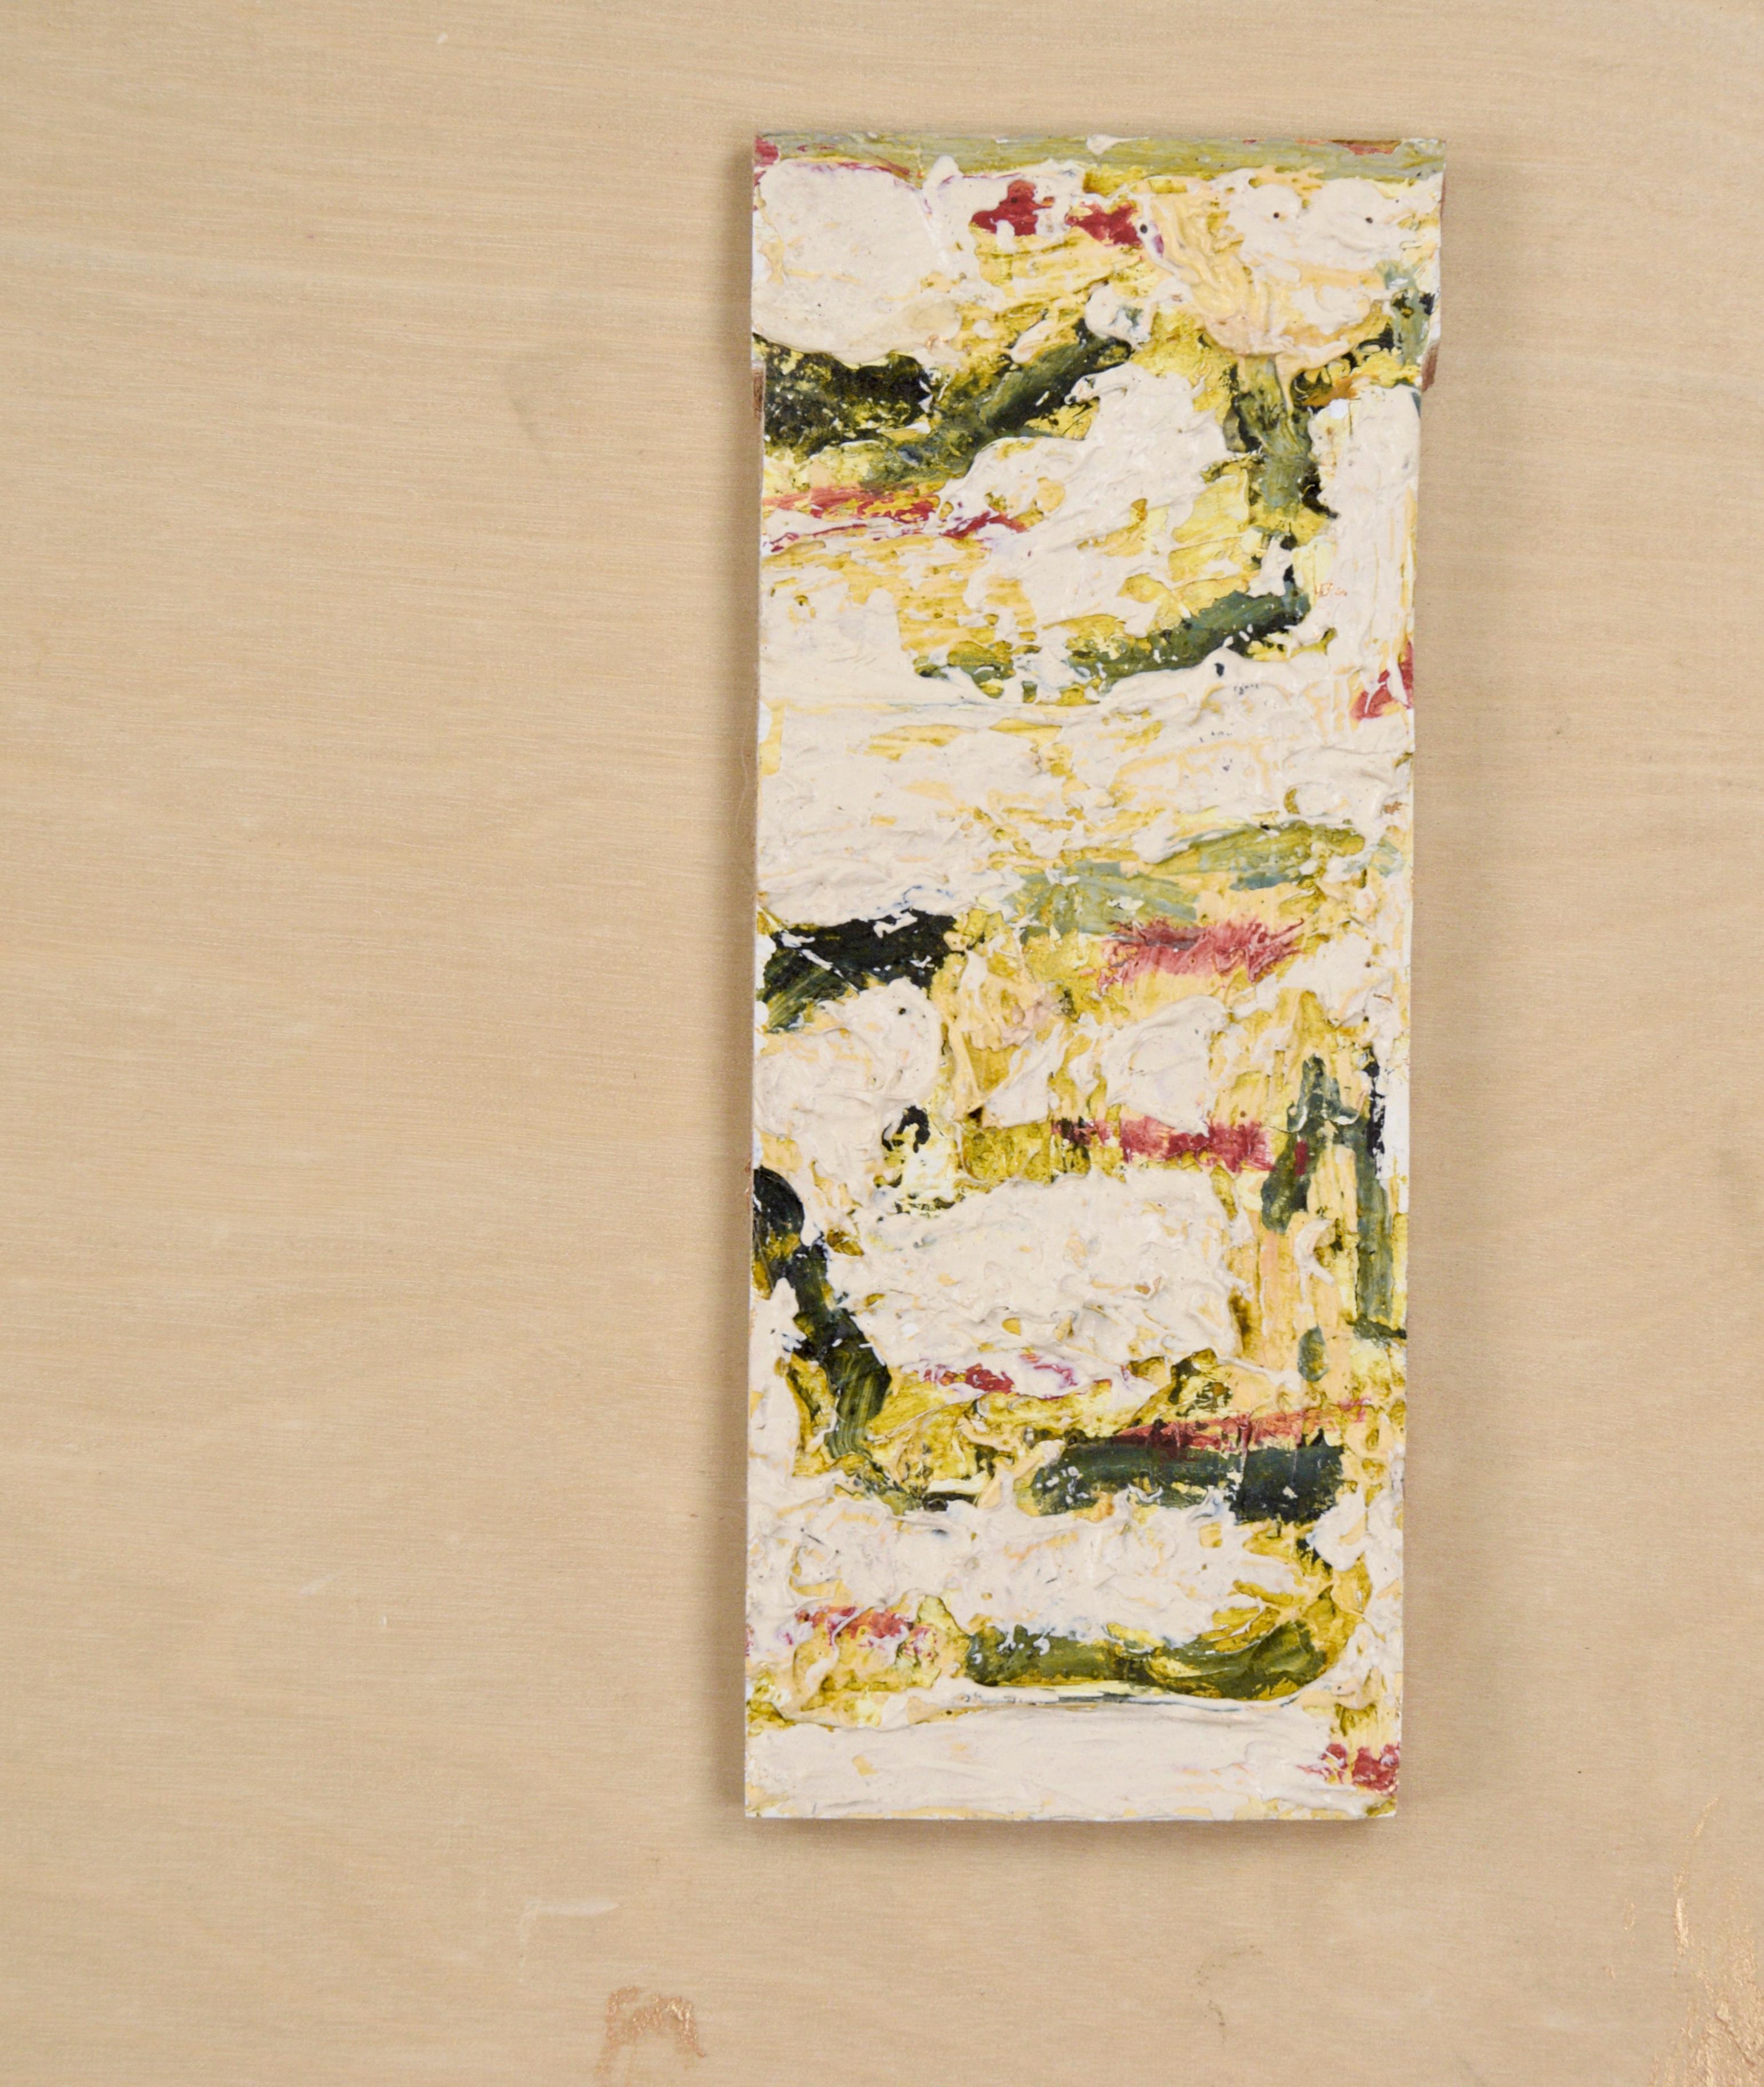 Abstraktes expressionistisches Ölgemälde mit montierten Objekten des Bay Area Künstlers Michael Pauker (Amerikaner, geb. 1957). Auf eine Holztafel werden goldene Farbspritzer und ein paar Stücke gebrannter Umbra aufgetragen. An der Tafel sind